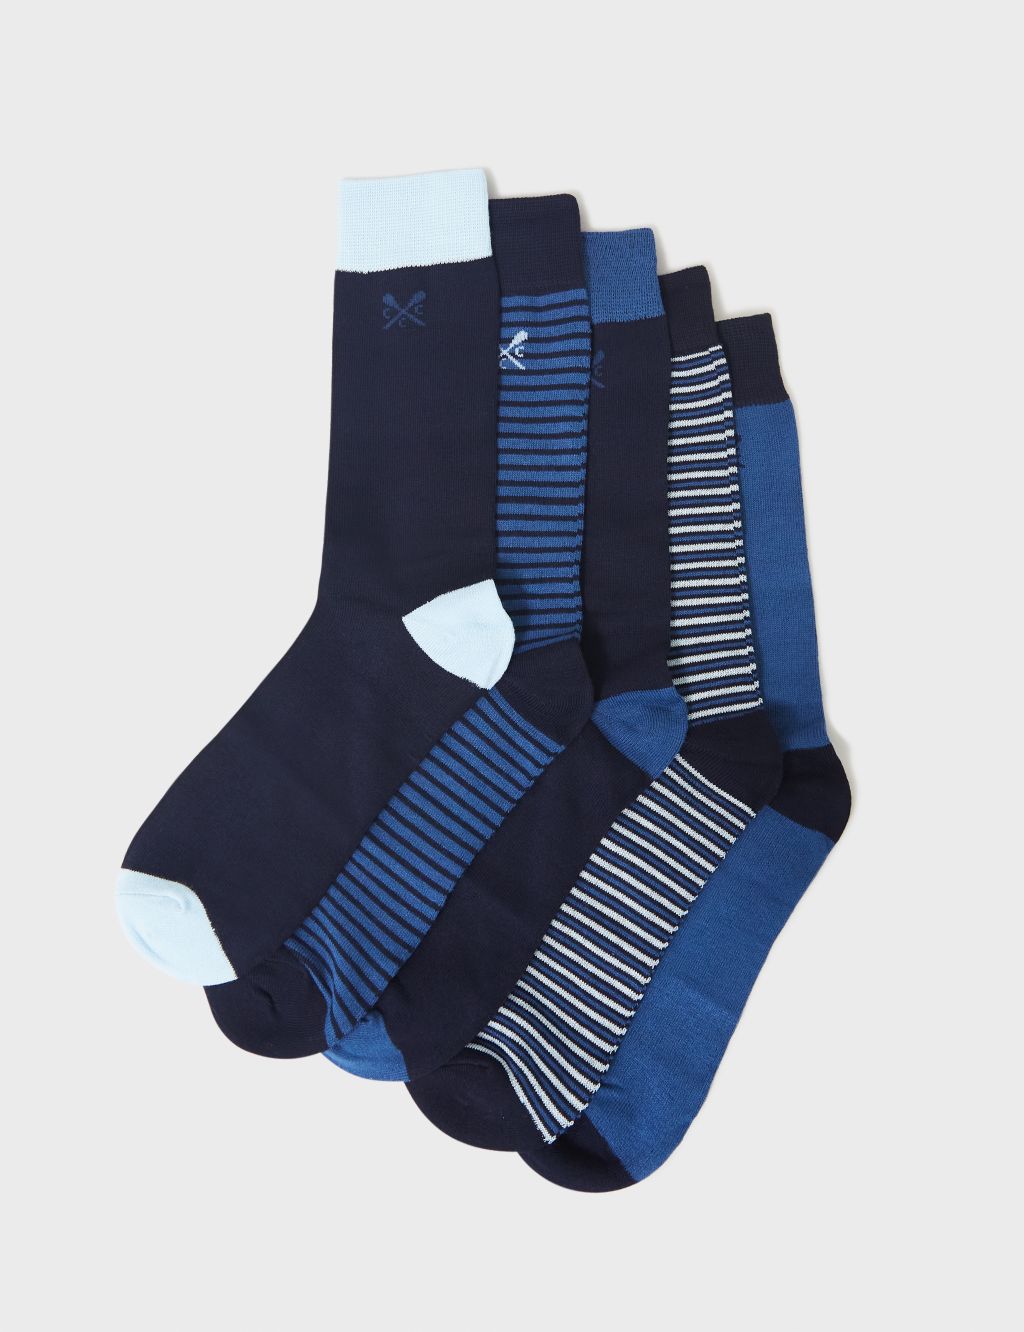 5pk Striped & Plain Socks image 1